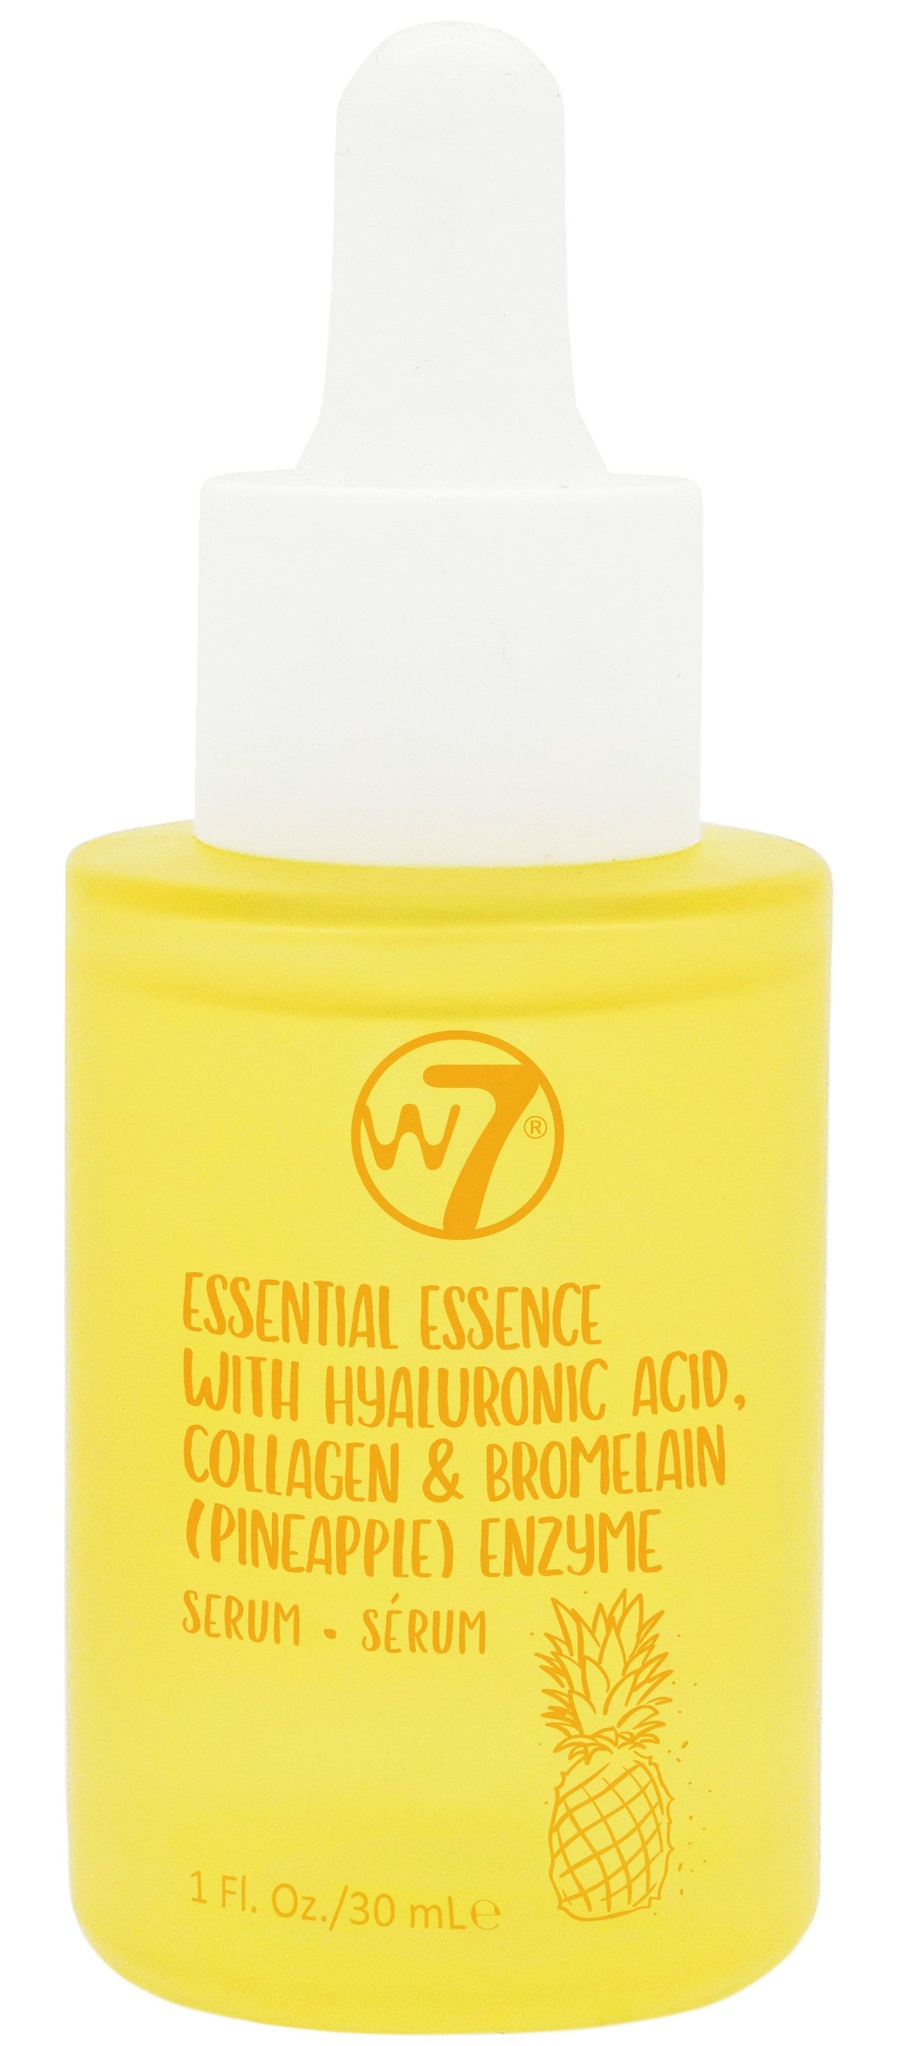 W7 Essential Essence Serum